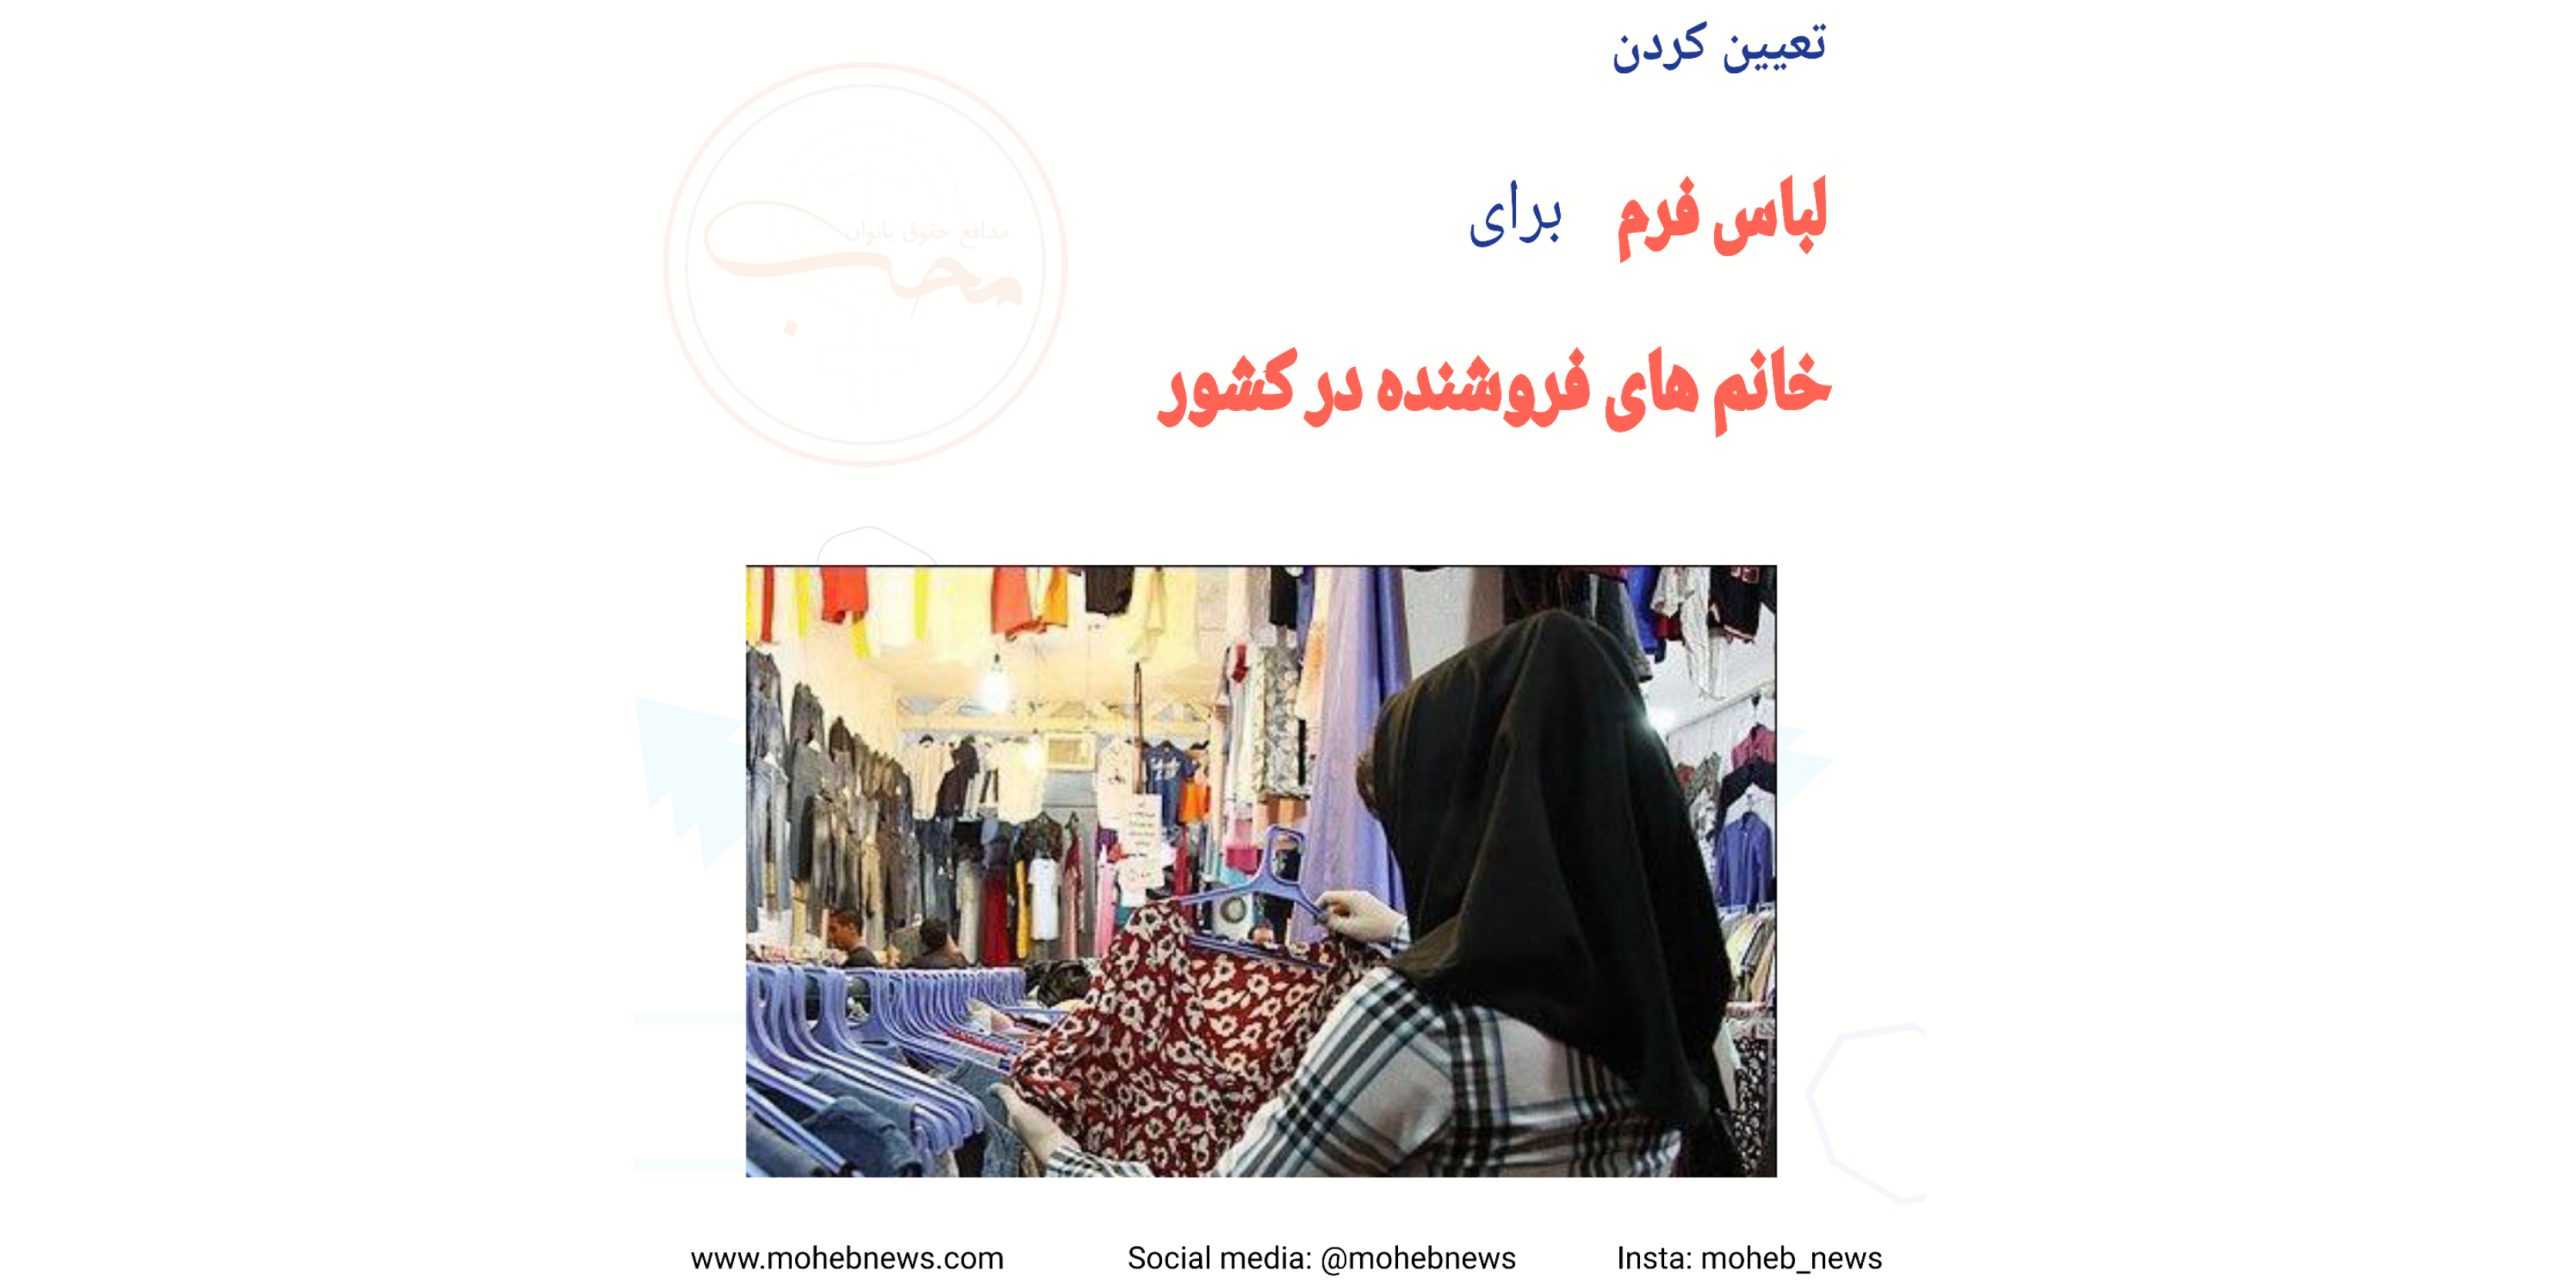 تعیین لباس فرم برای خانم های فروشنده در سطح کشور | محب نیوز